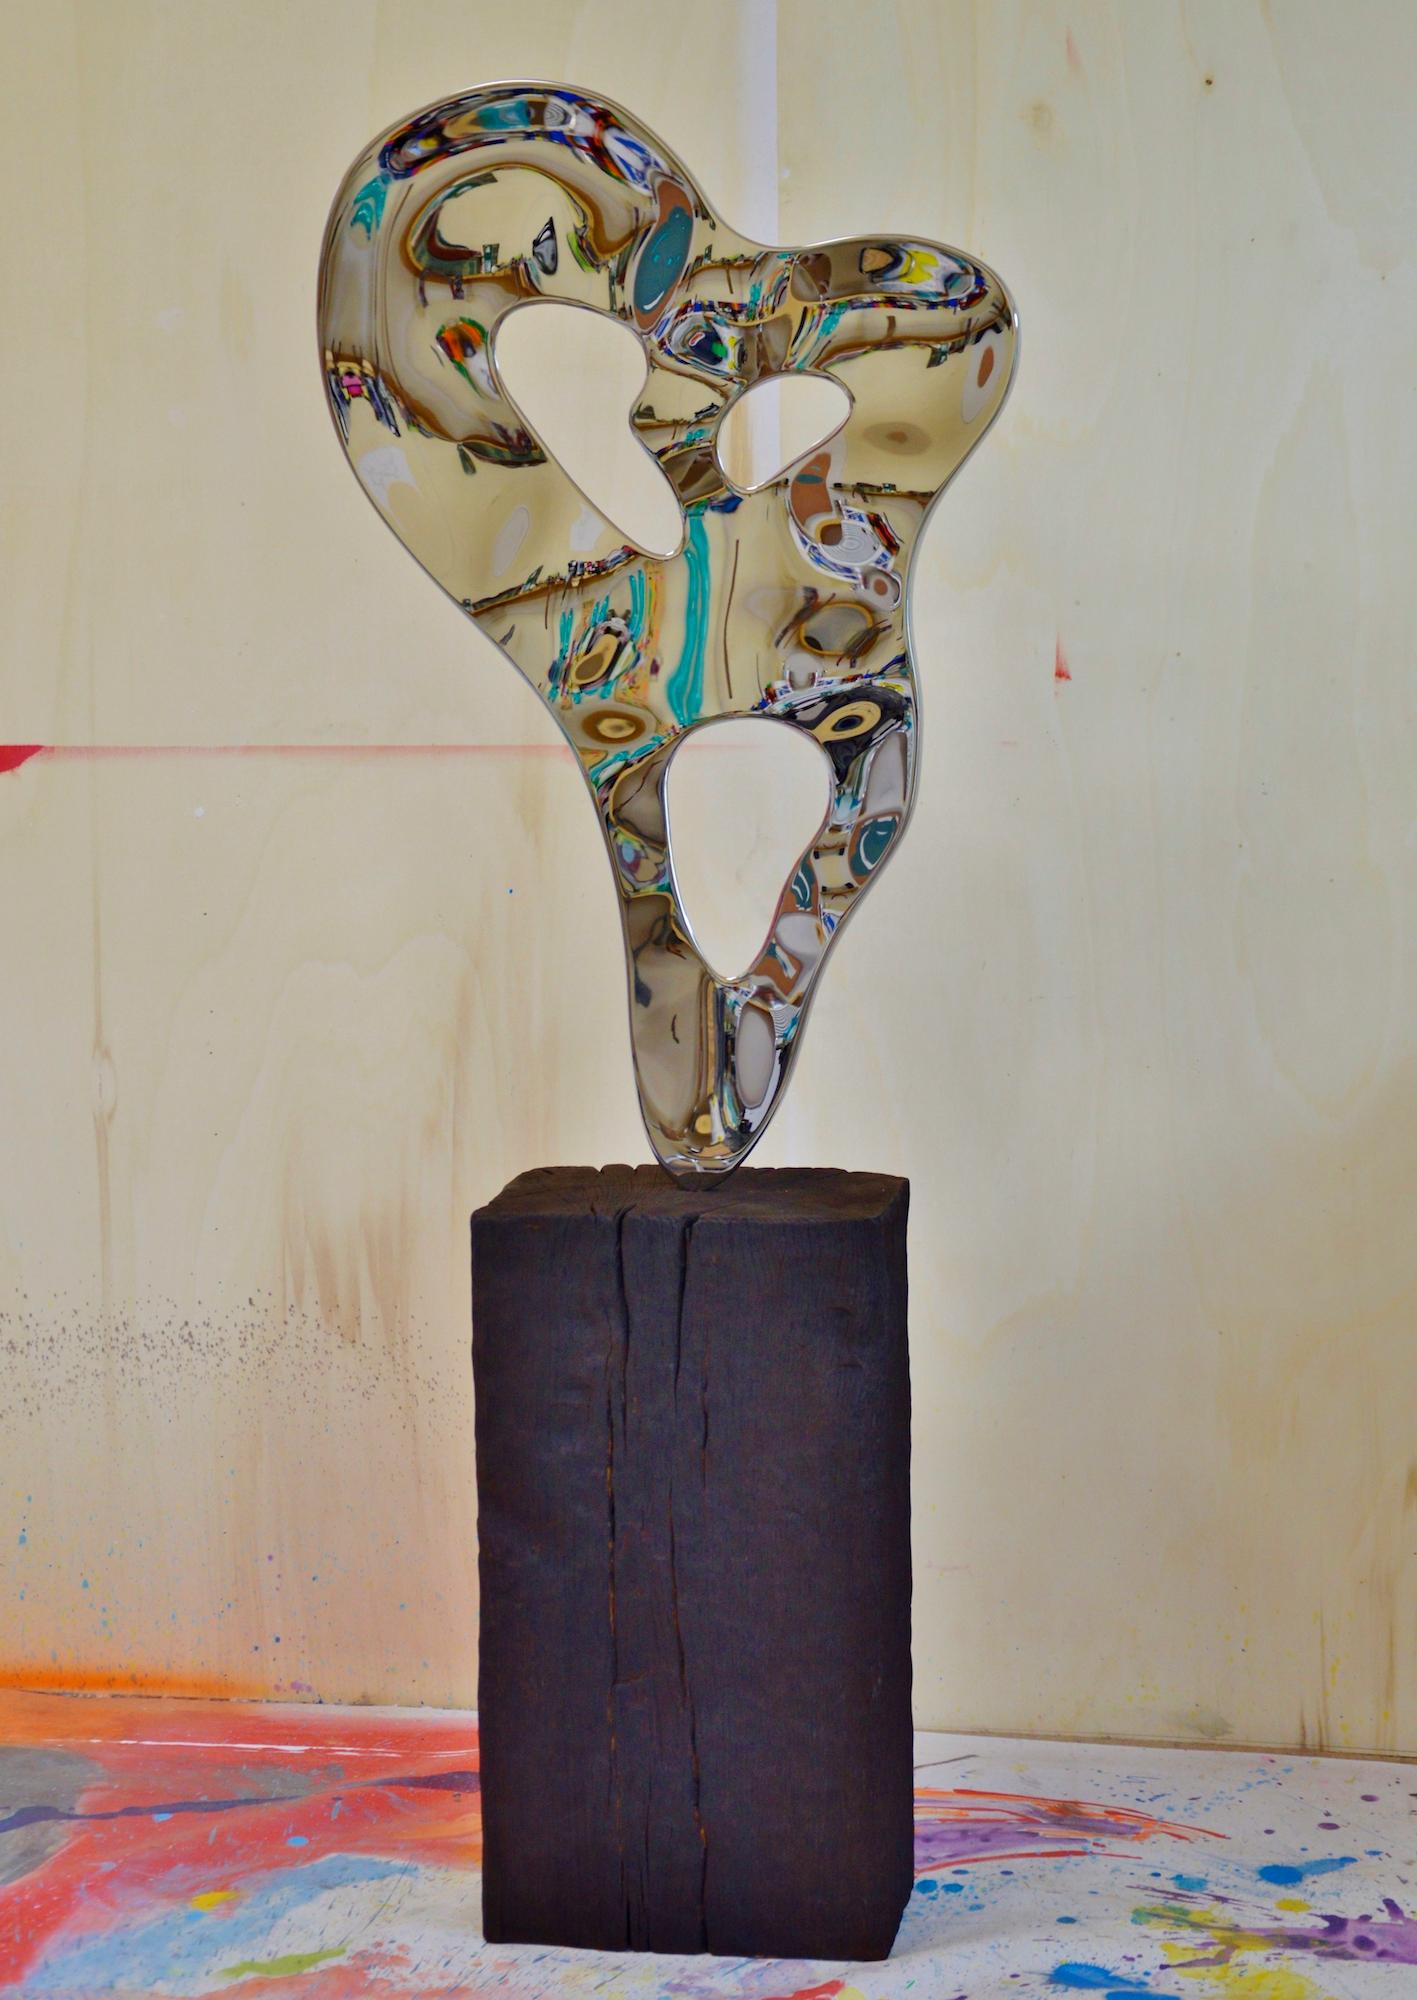 Ectoplasm II est une sculpture unique en acier inoxydable poli miroir et base en bois de chêne brûlé de l'artiste contemporain Franck K. Les dimensions sont 153 × 59 × 22 cm (60,2 × 23,2 × 8,7 in). 
La sculpture est signée et accompagnée d'un